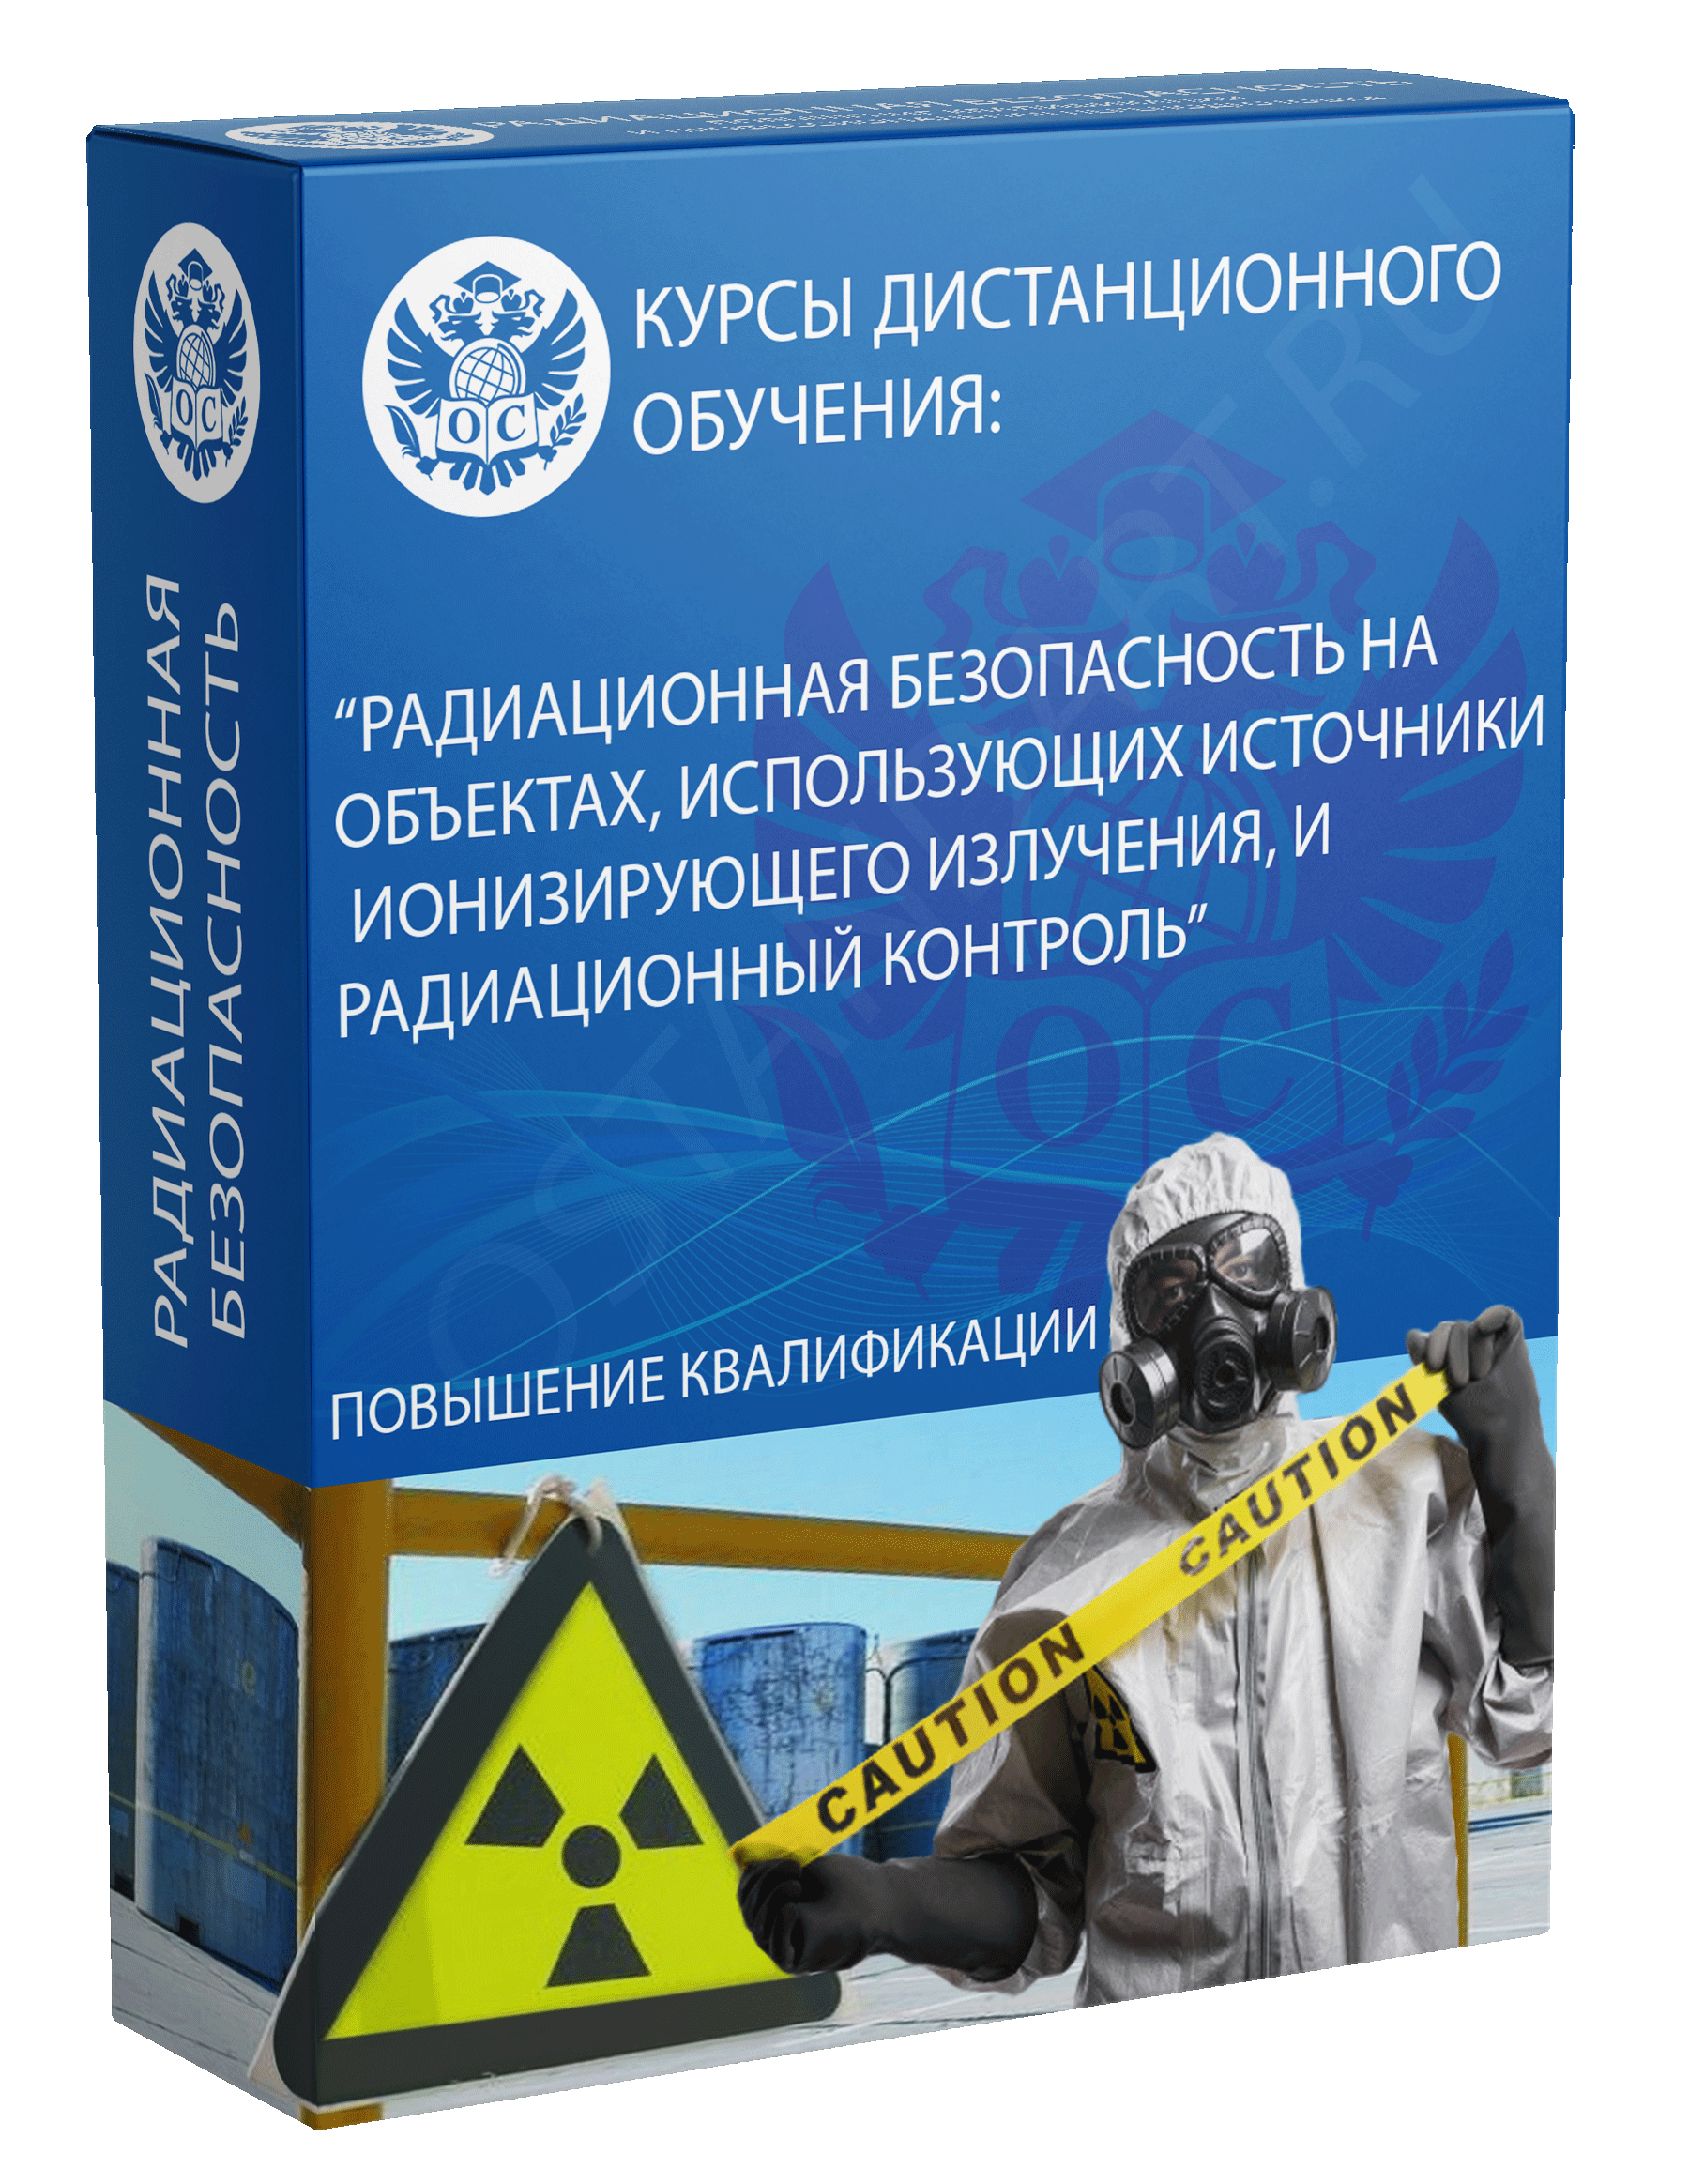 Радиационная безопасность на объектах, использующих источники ионизирующего излучения, и радиационный контроль курс обучения